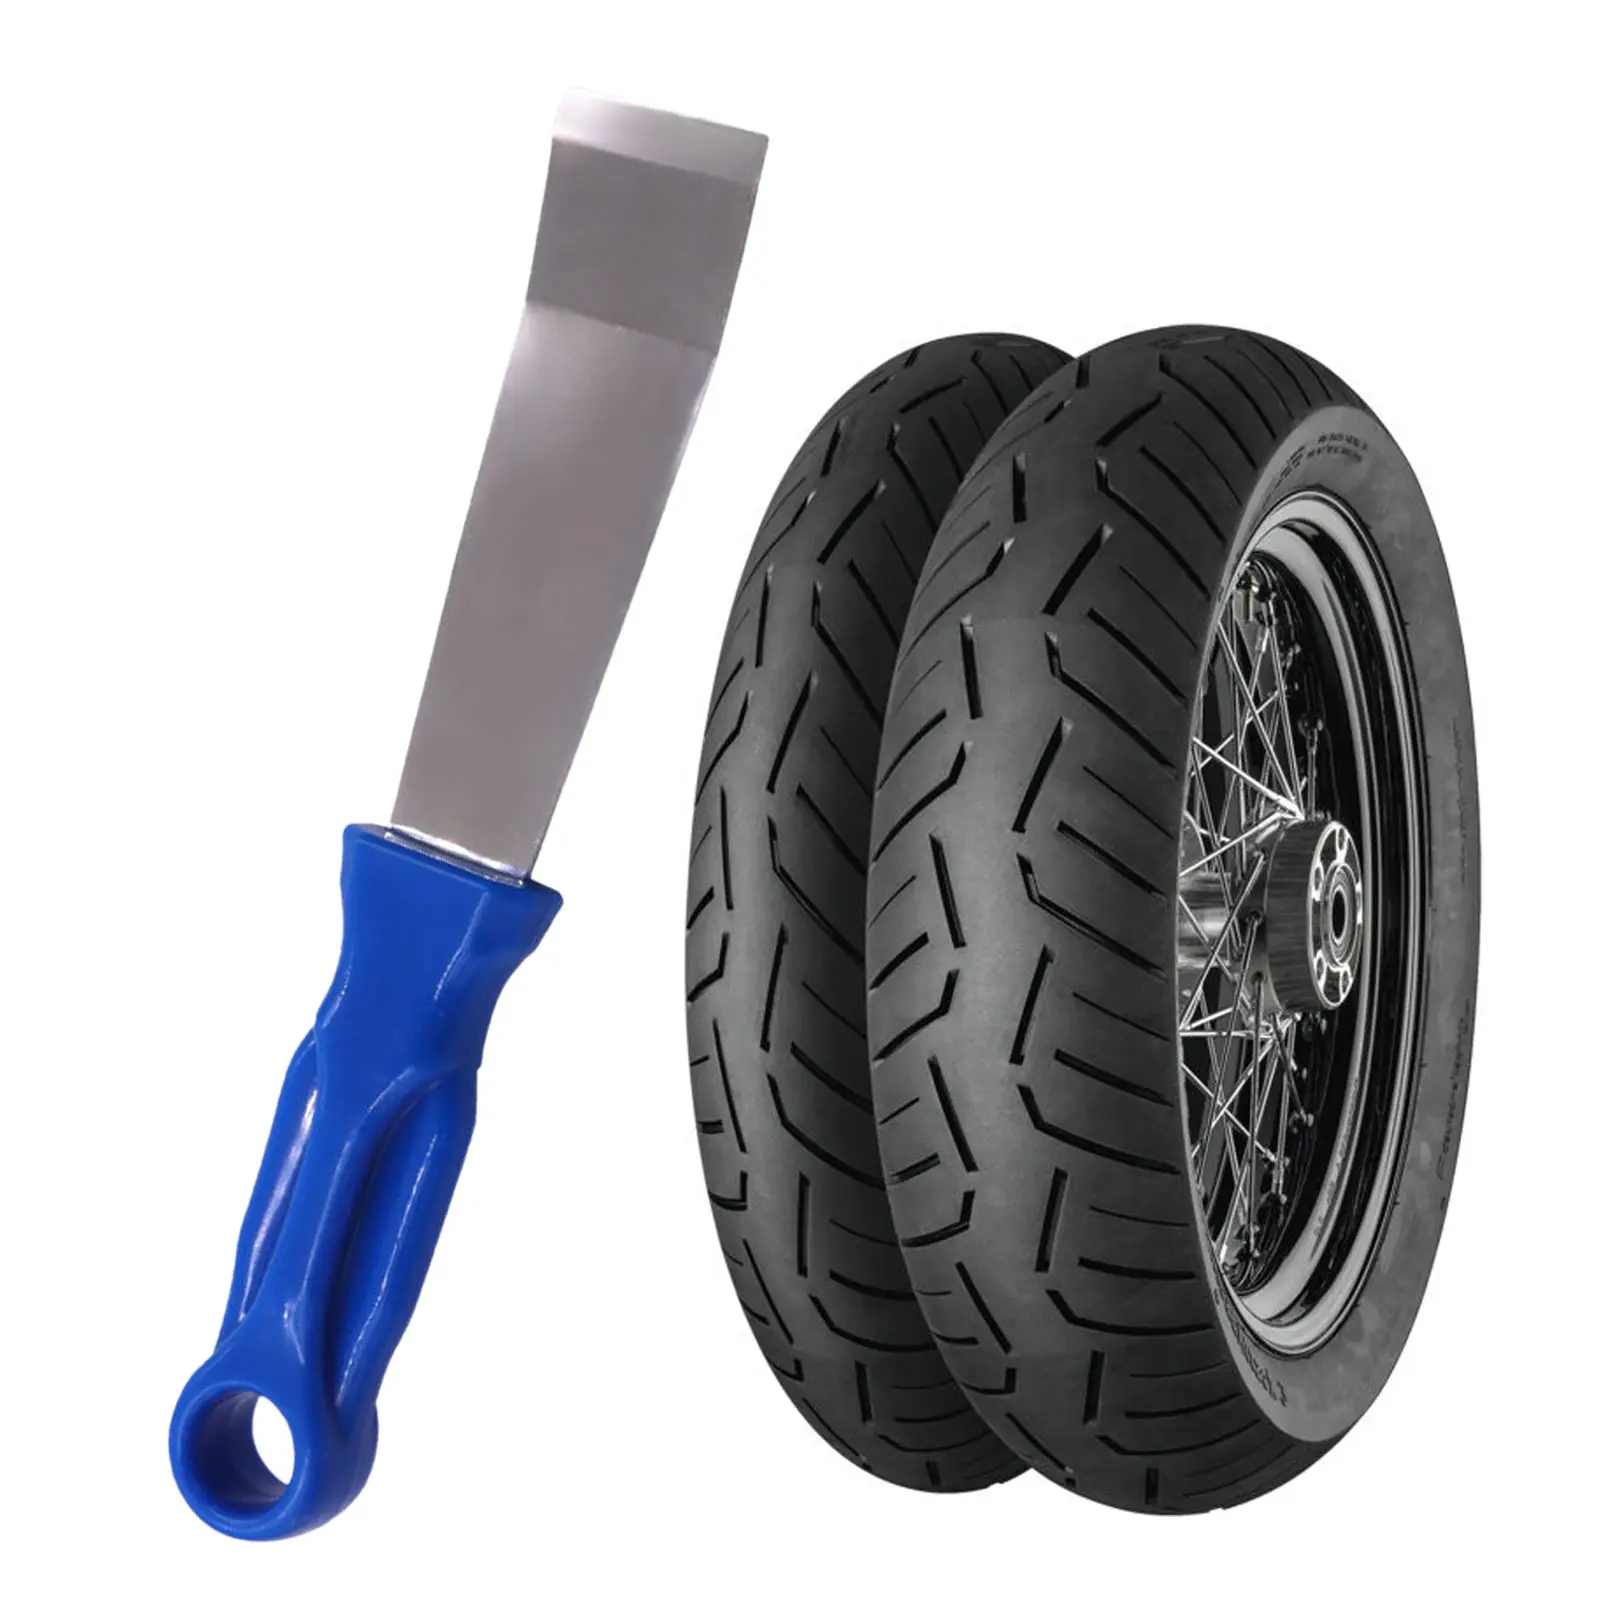 

Клейкий металлический скребок | Инструмент для ремонта автомобильных шин | Прочный и крепкий инструмент для демонтажа веса колес для клея